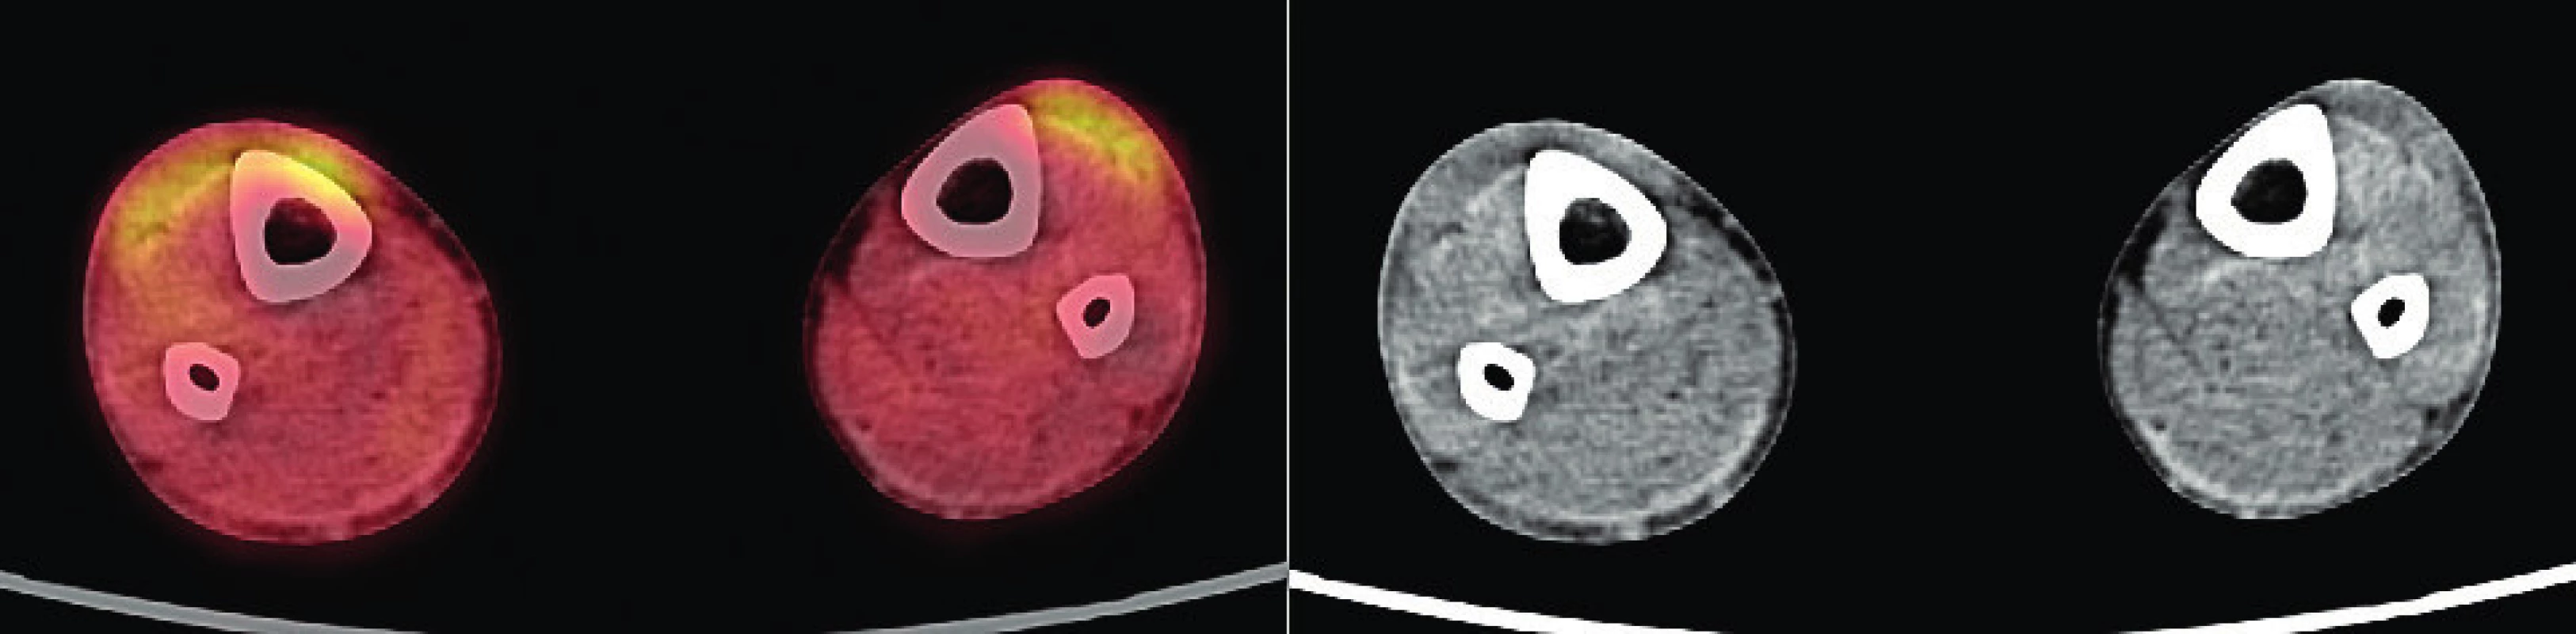 PET/CT zobrazení dolních končetin pacienta s xantogranulomem z roku 2019 – část 3